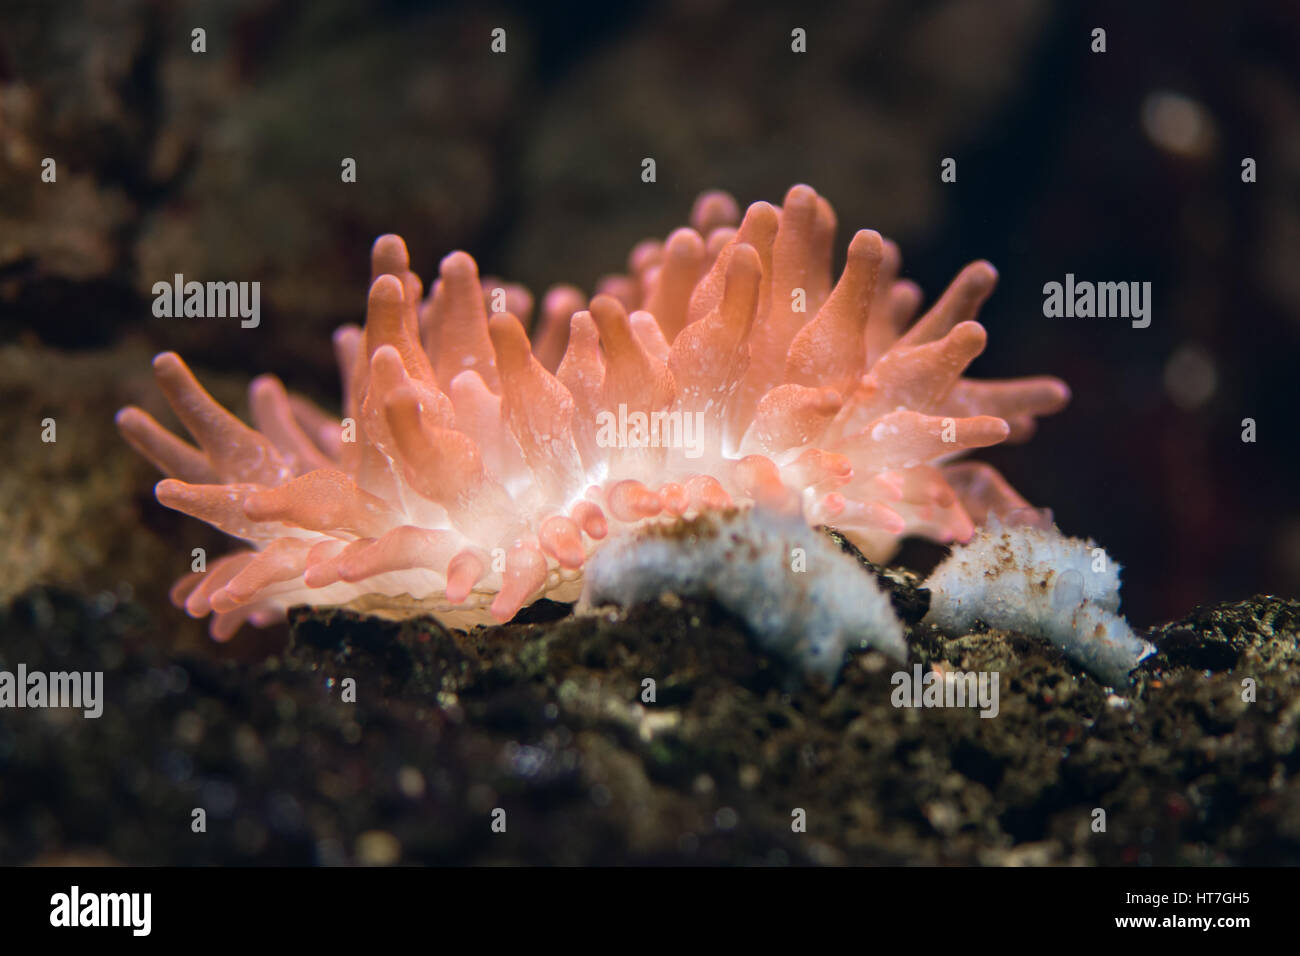 Bulle-tip (anémone Entacmaea quadricolor). Anémone de mer rose vif en famille Actiniidae, hôte de poisson clown (Amphiprion sp.) Banque D'Images